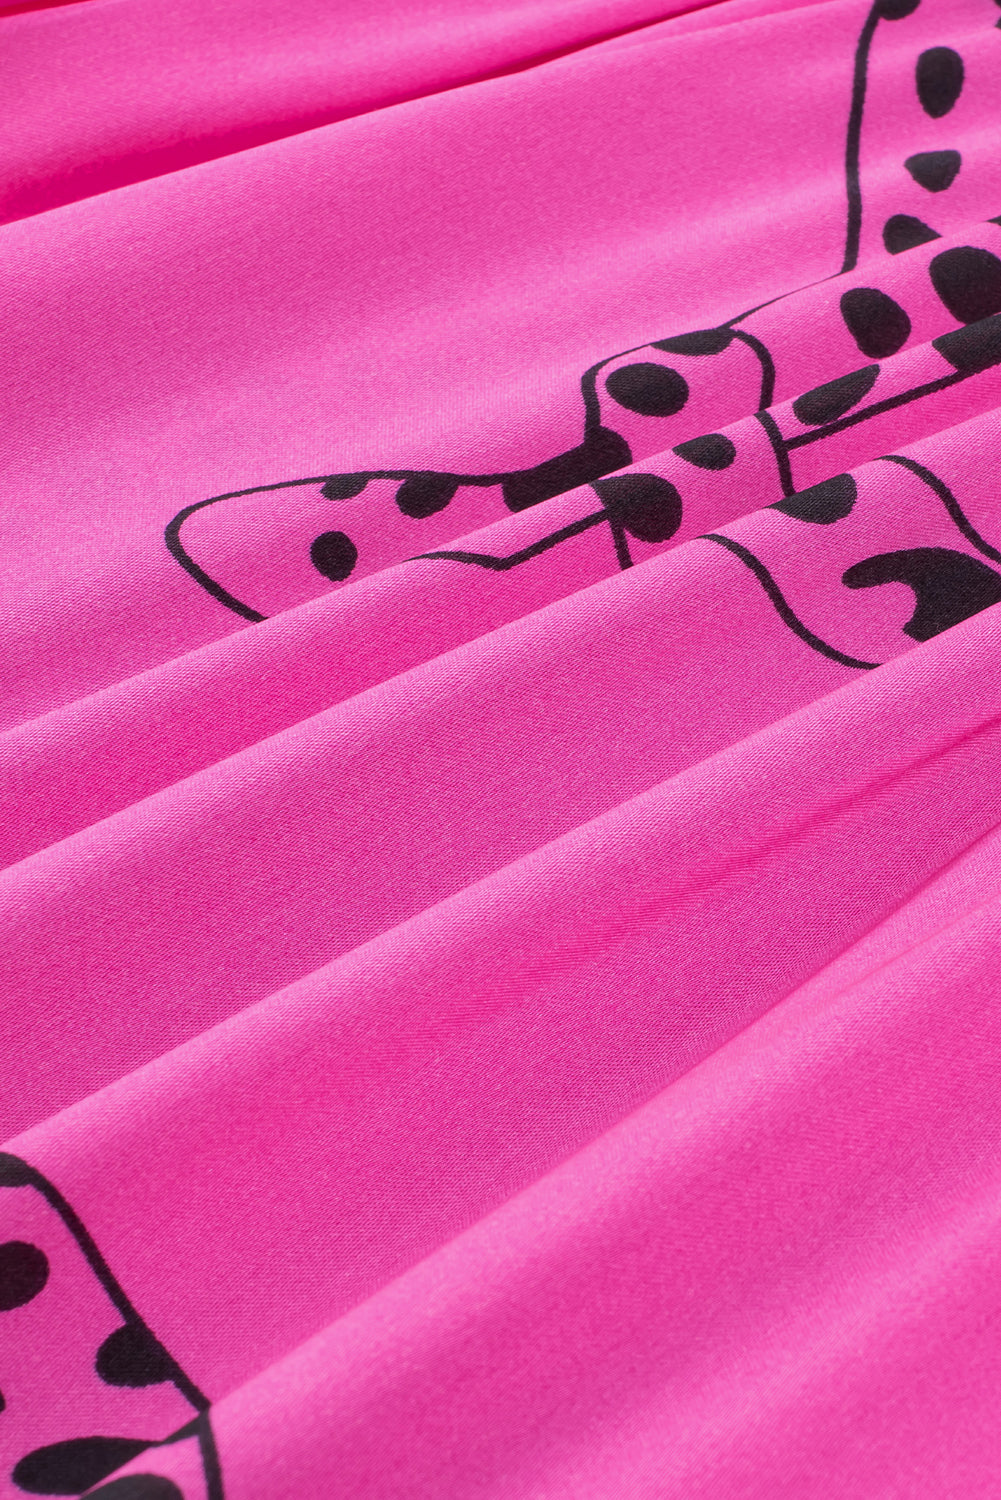 Geknöpftes Minikleid mit rosa Gepardenmuster und halblangen Ärmeln in Übergröße